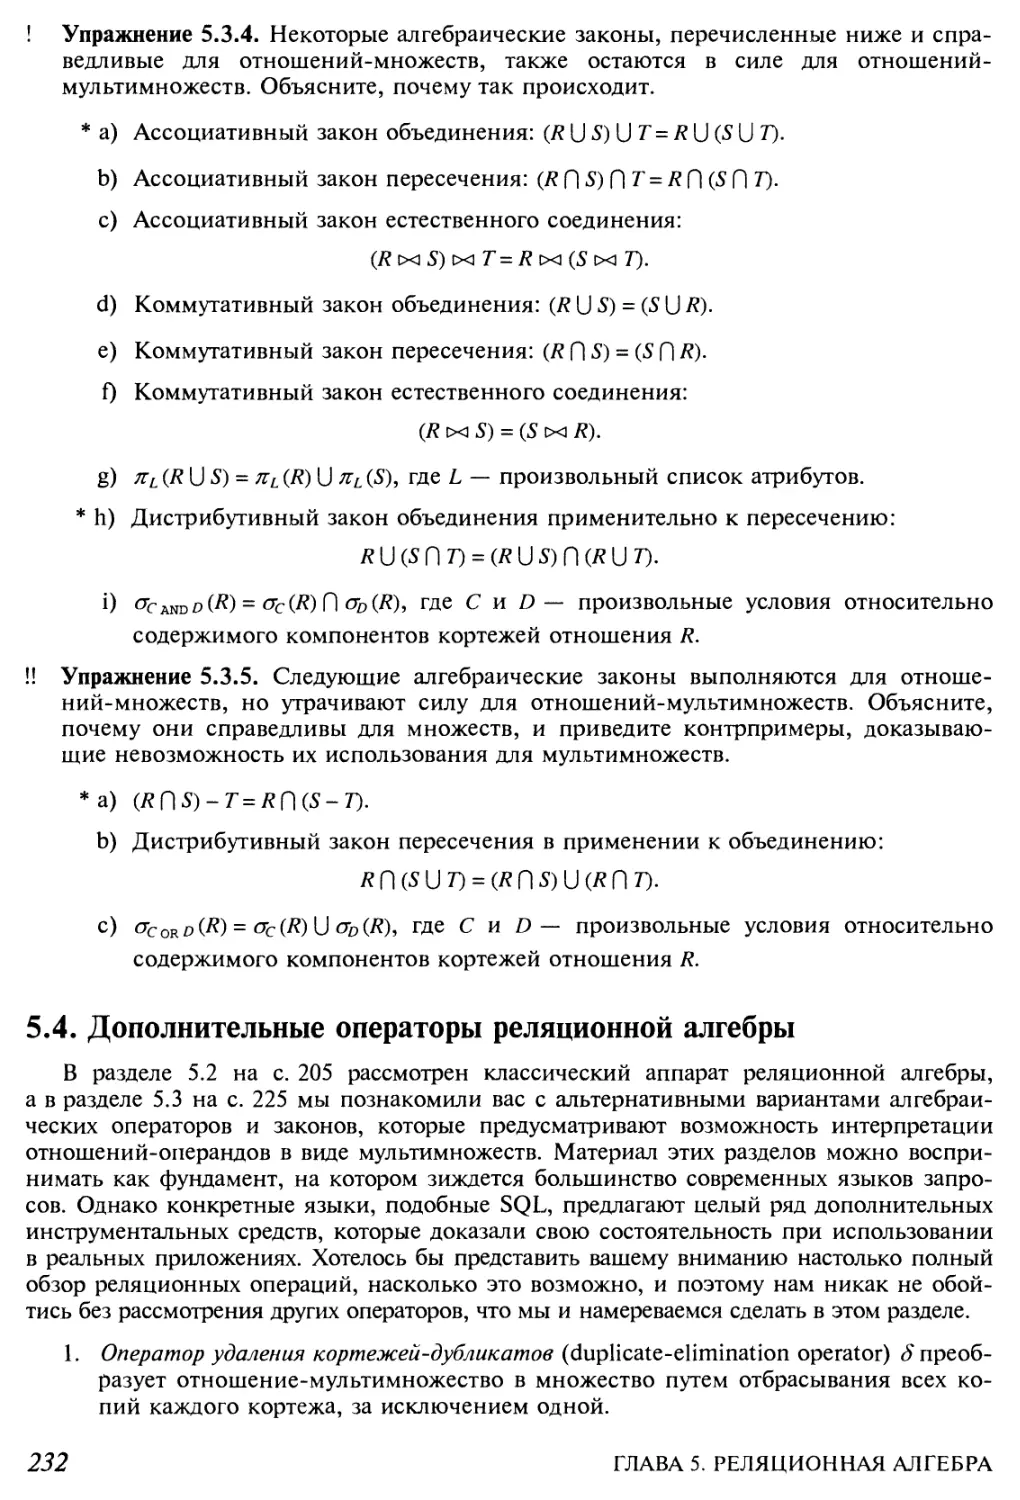 5.4. Дополнительные операторы реляционной алгебры